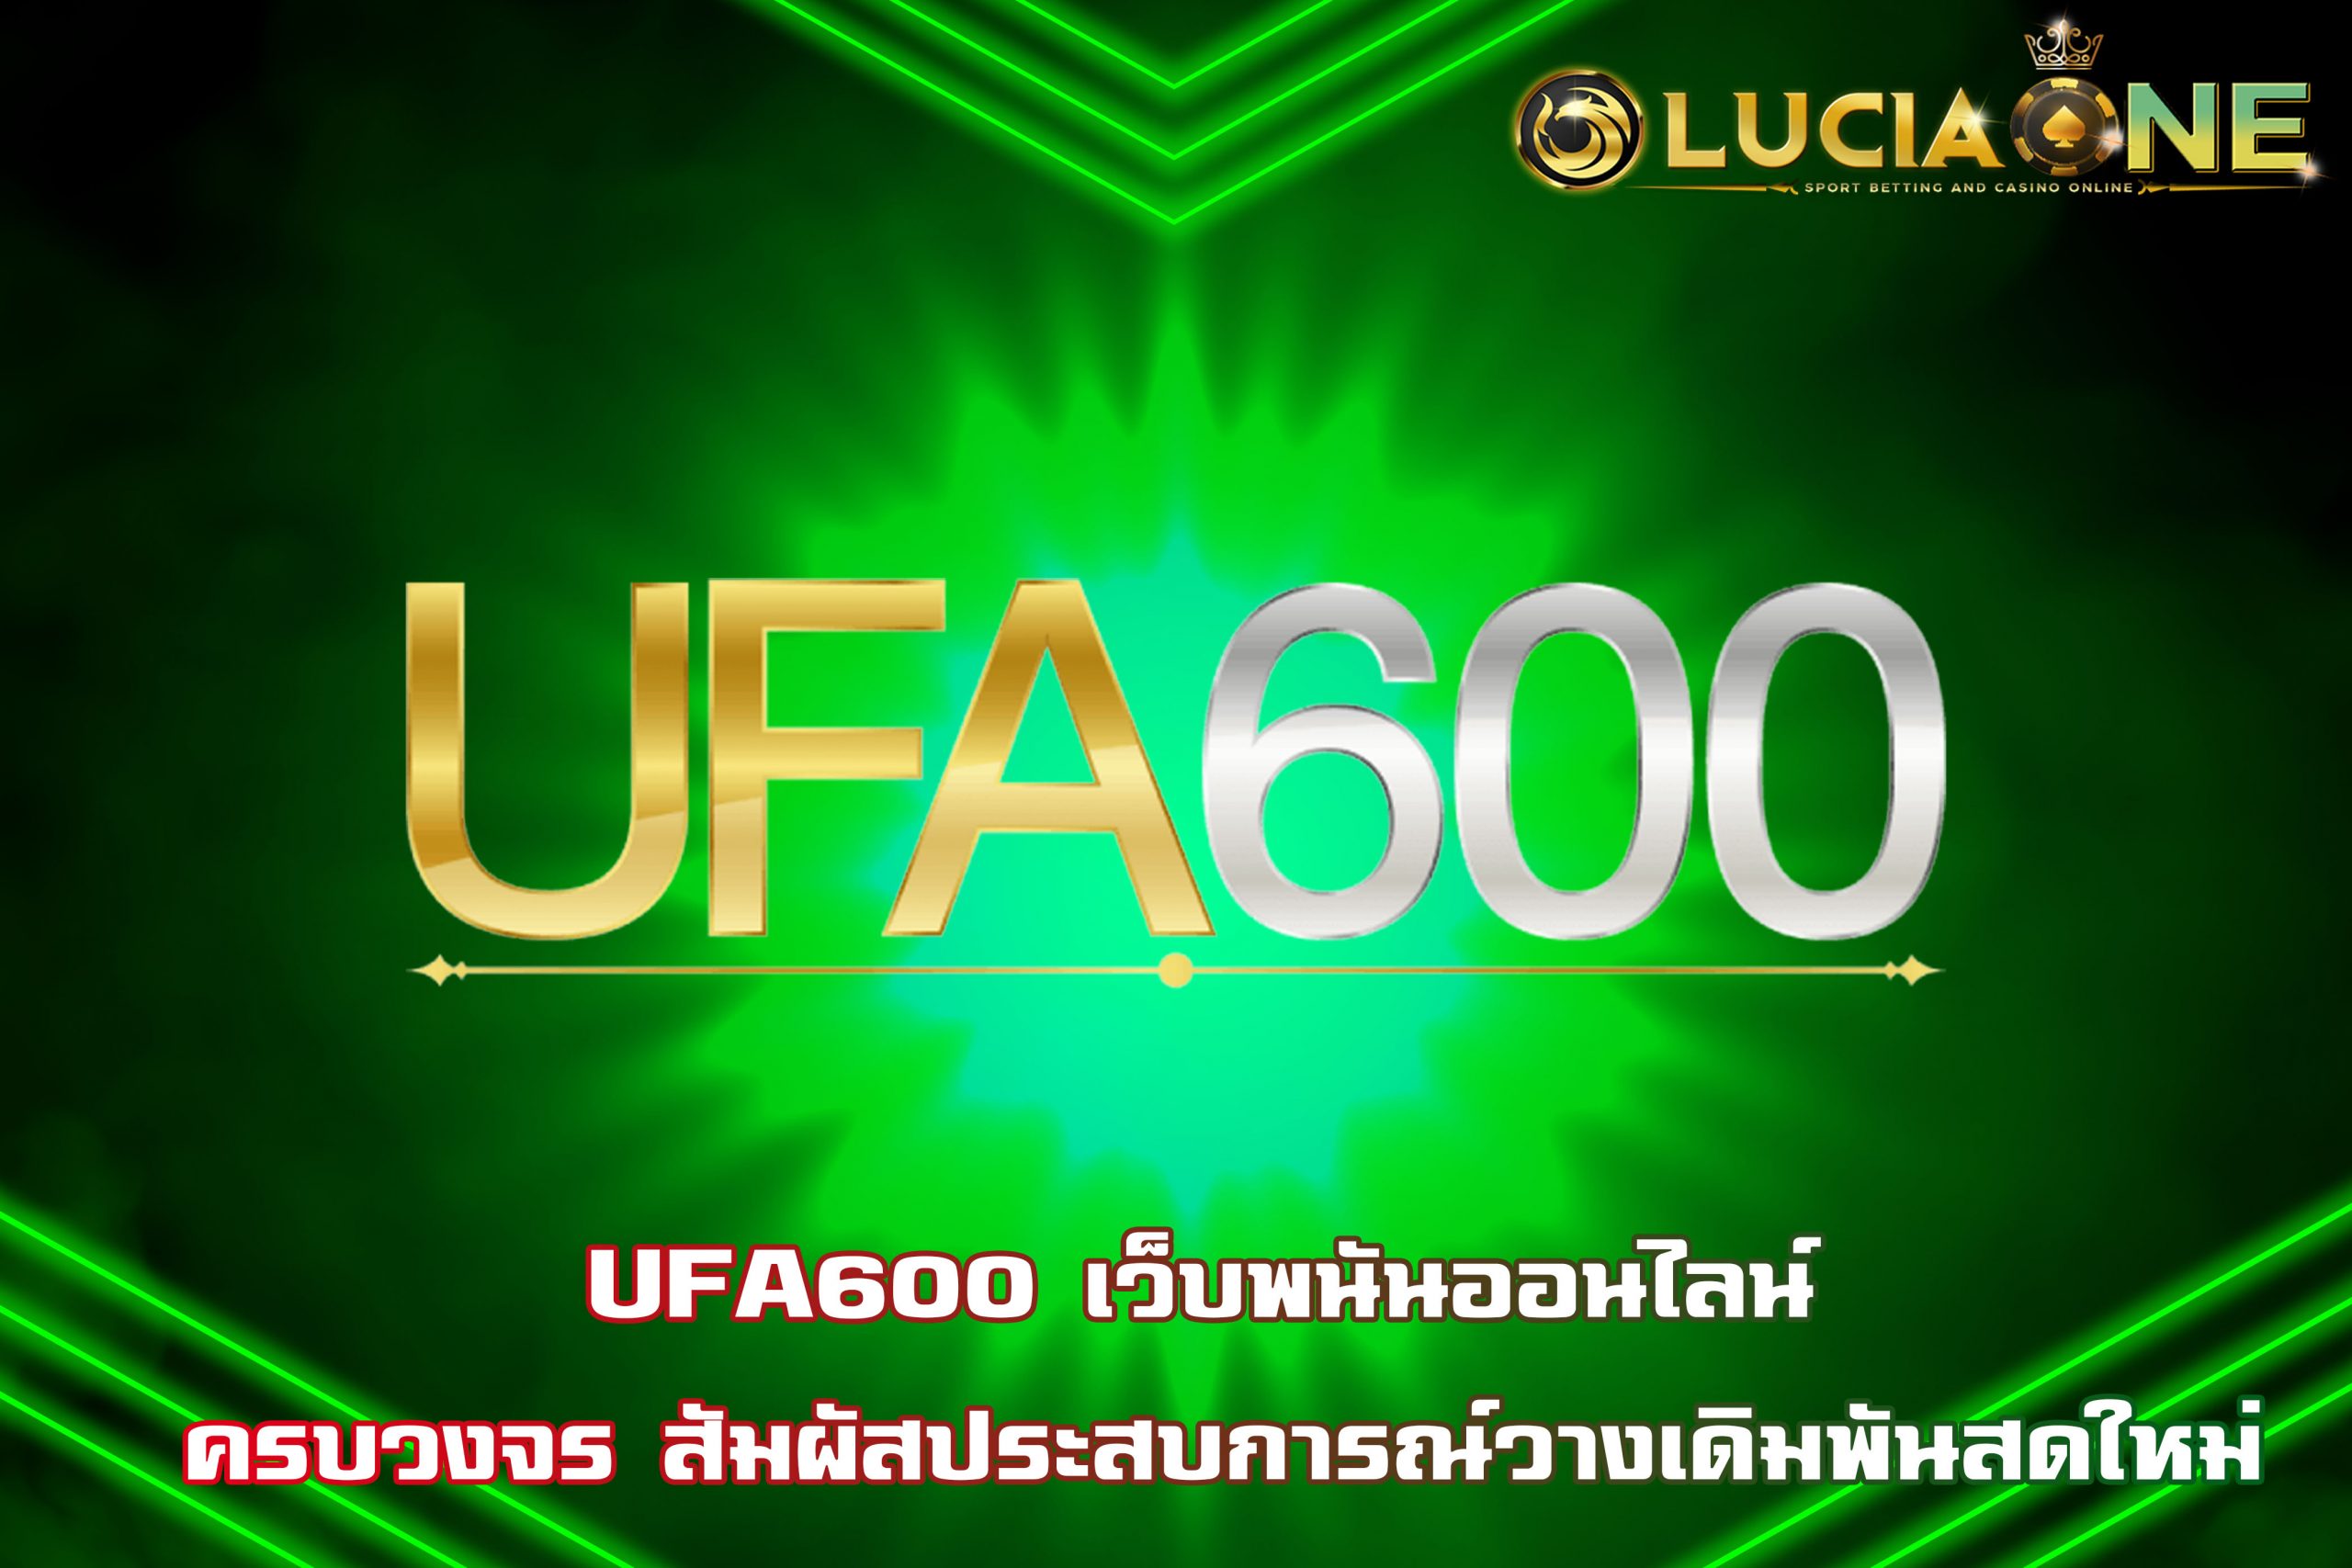 UFA600 เว็บพนันออนไลน์ ครบวงจร สัมผัสประสบการณ์วางเดิมพันสดใหม่